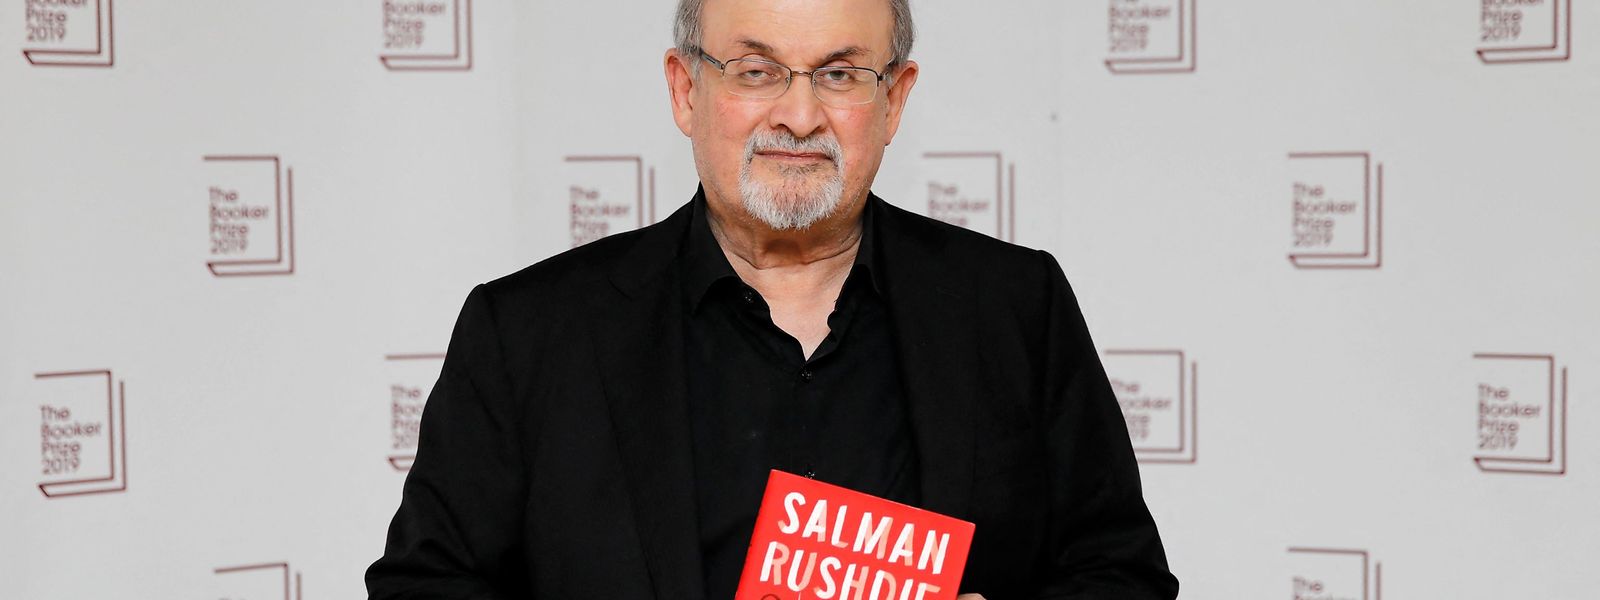 Der 75-jährige Schriftsteller Salman Rushdie wurde am Freitag bei einer Veranstaltung mit einem Messer attackiert.